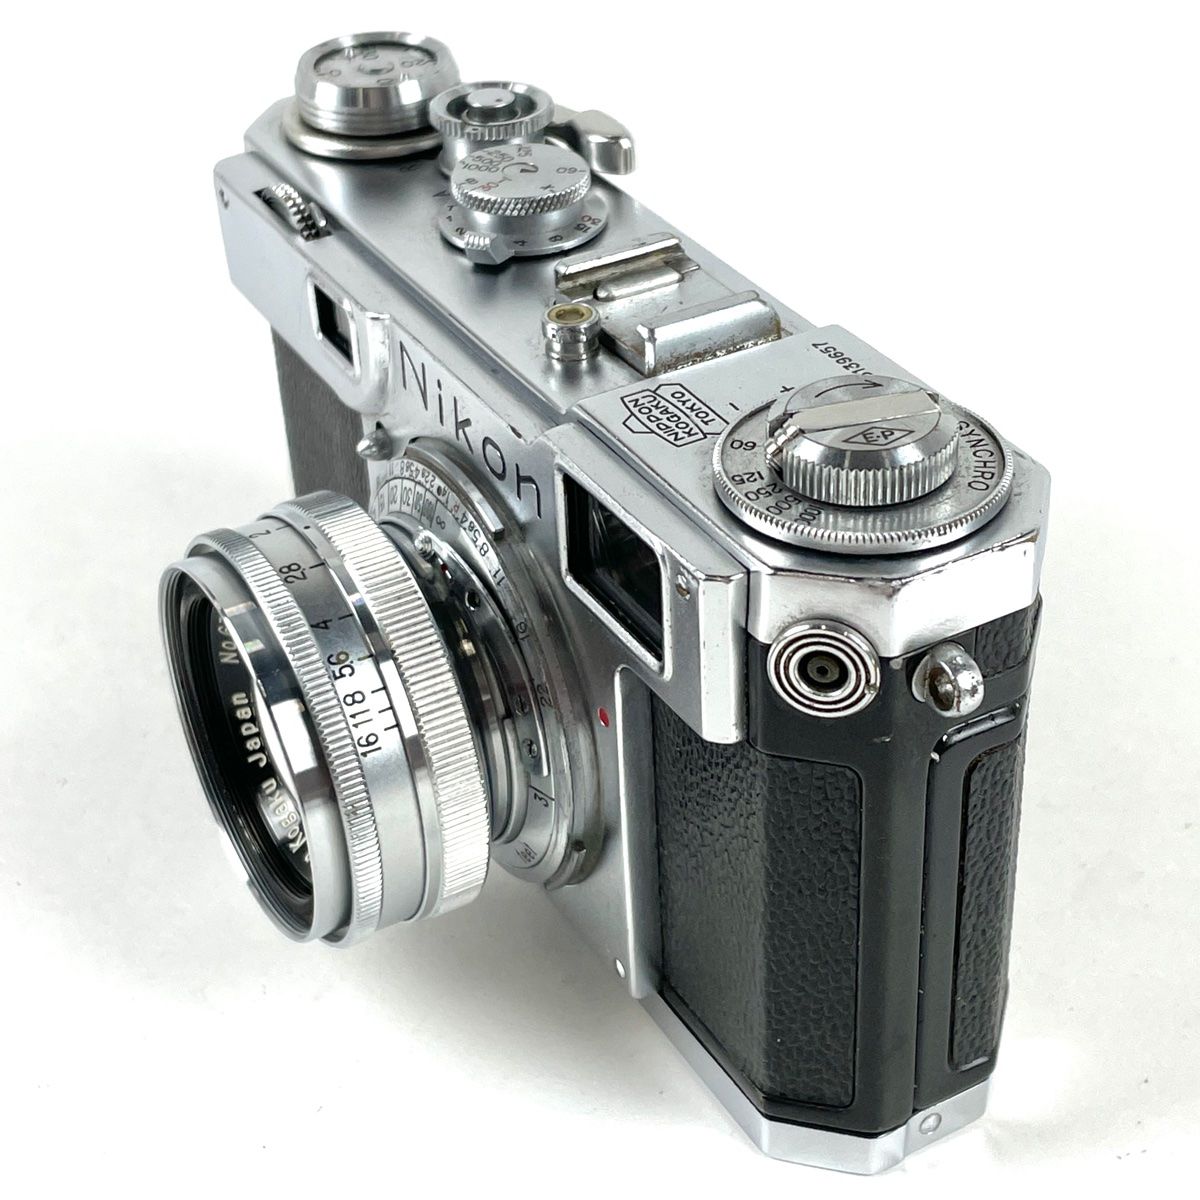 ニコン Nikon S2 + NIKKOR H.C 5cm F2 E.Pマーク付 フィルム レンジファインダーカメラ 【中古】